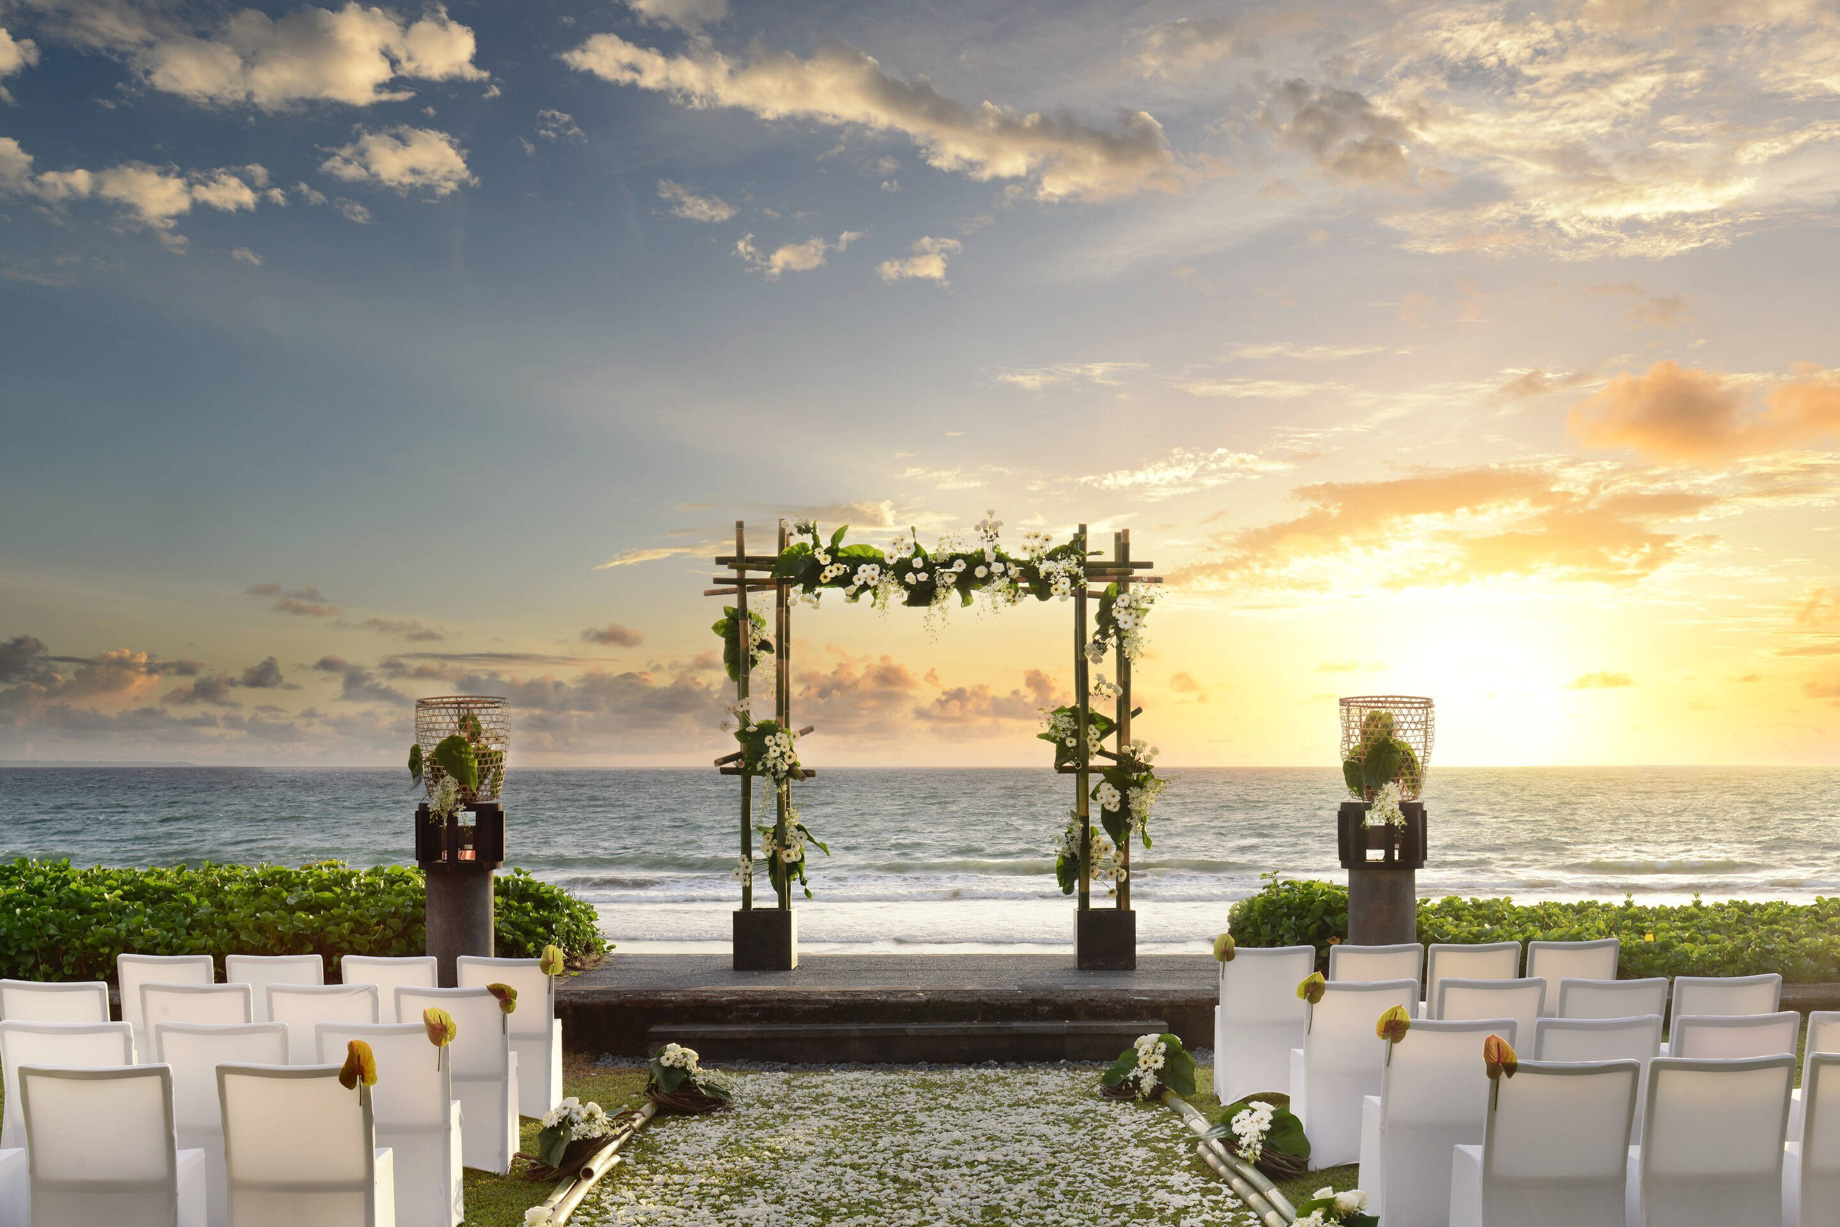 W Bali Seminyak Resort - Seminyak, Indonesia - Wedding Ceremony Sunset